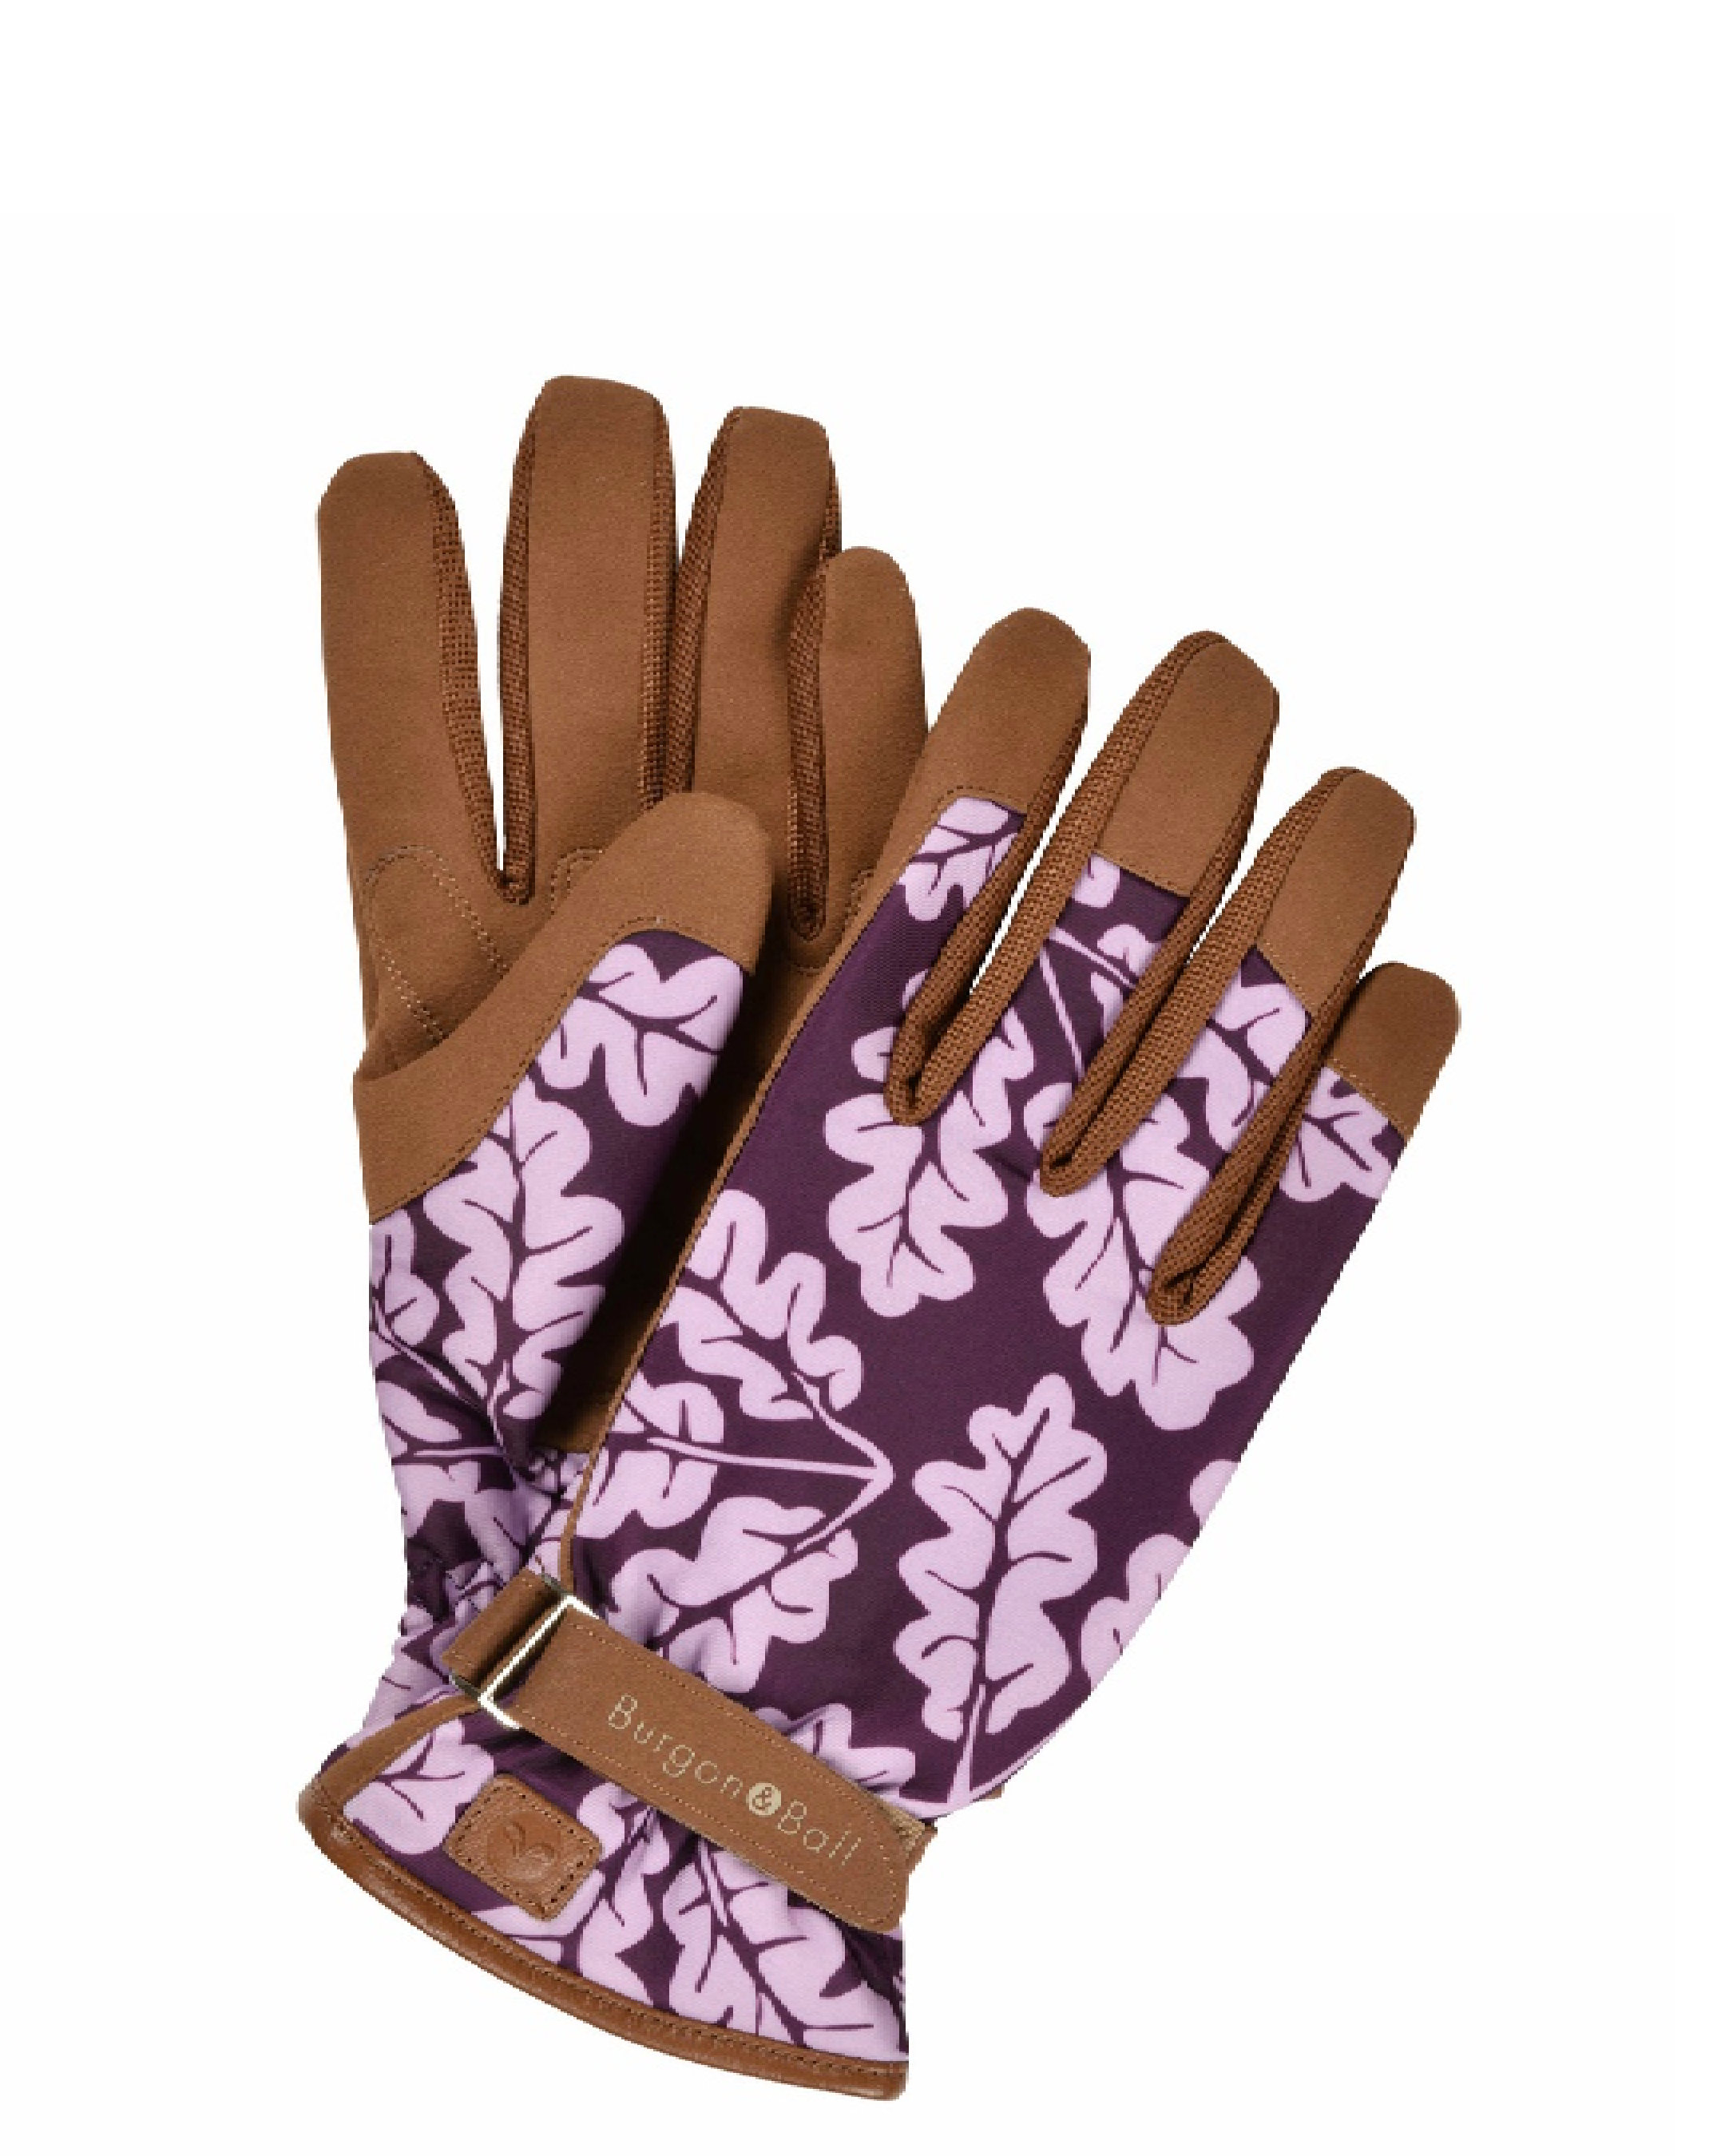 Love the Glove - Gardening Gloves